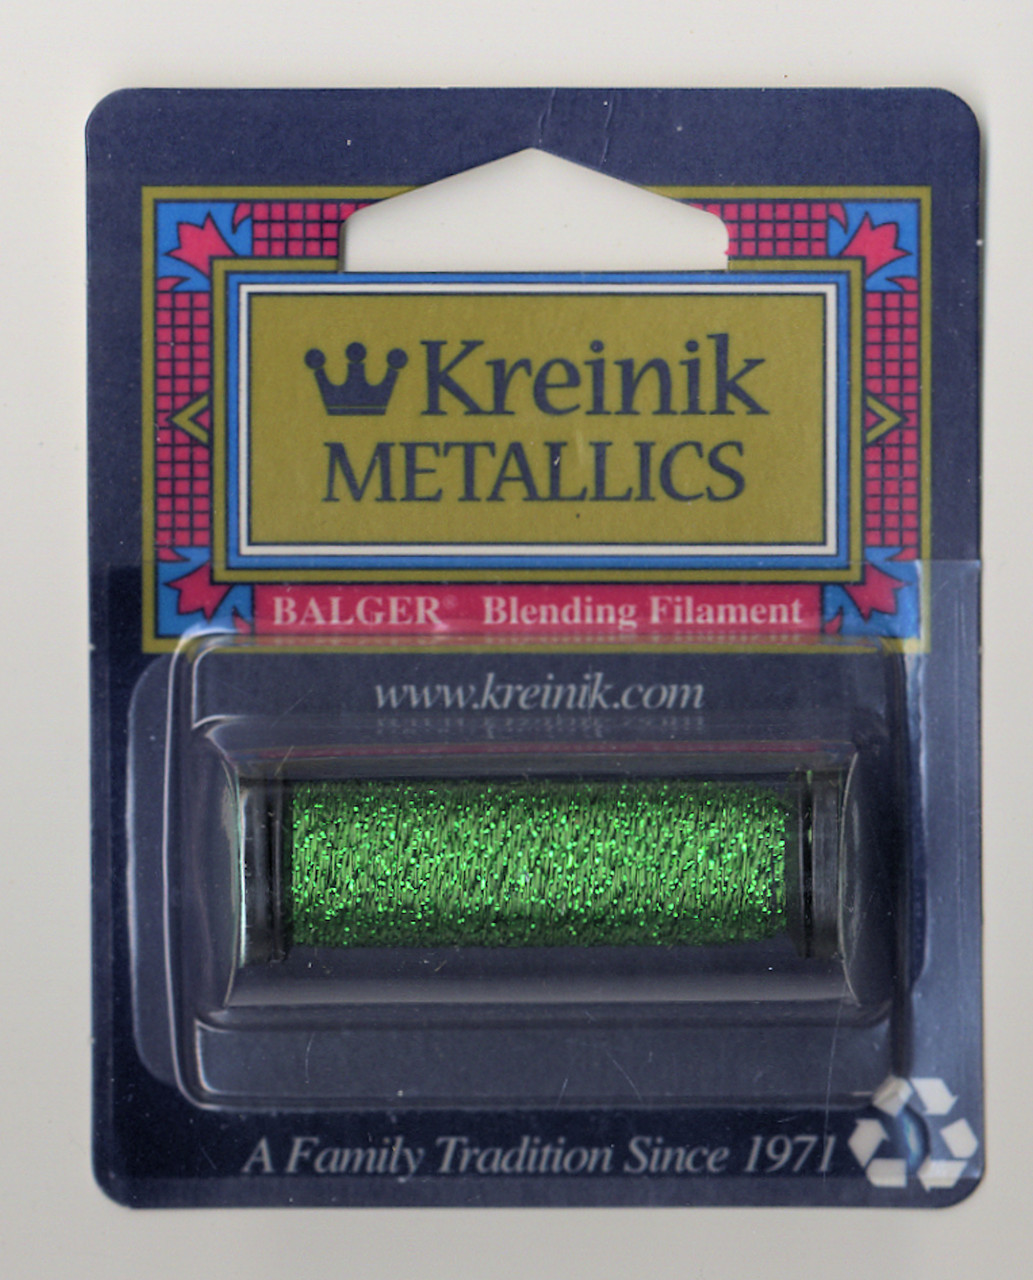 Kreinik Metallics Blending Filament - Green #008